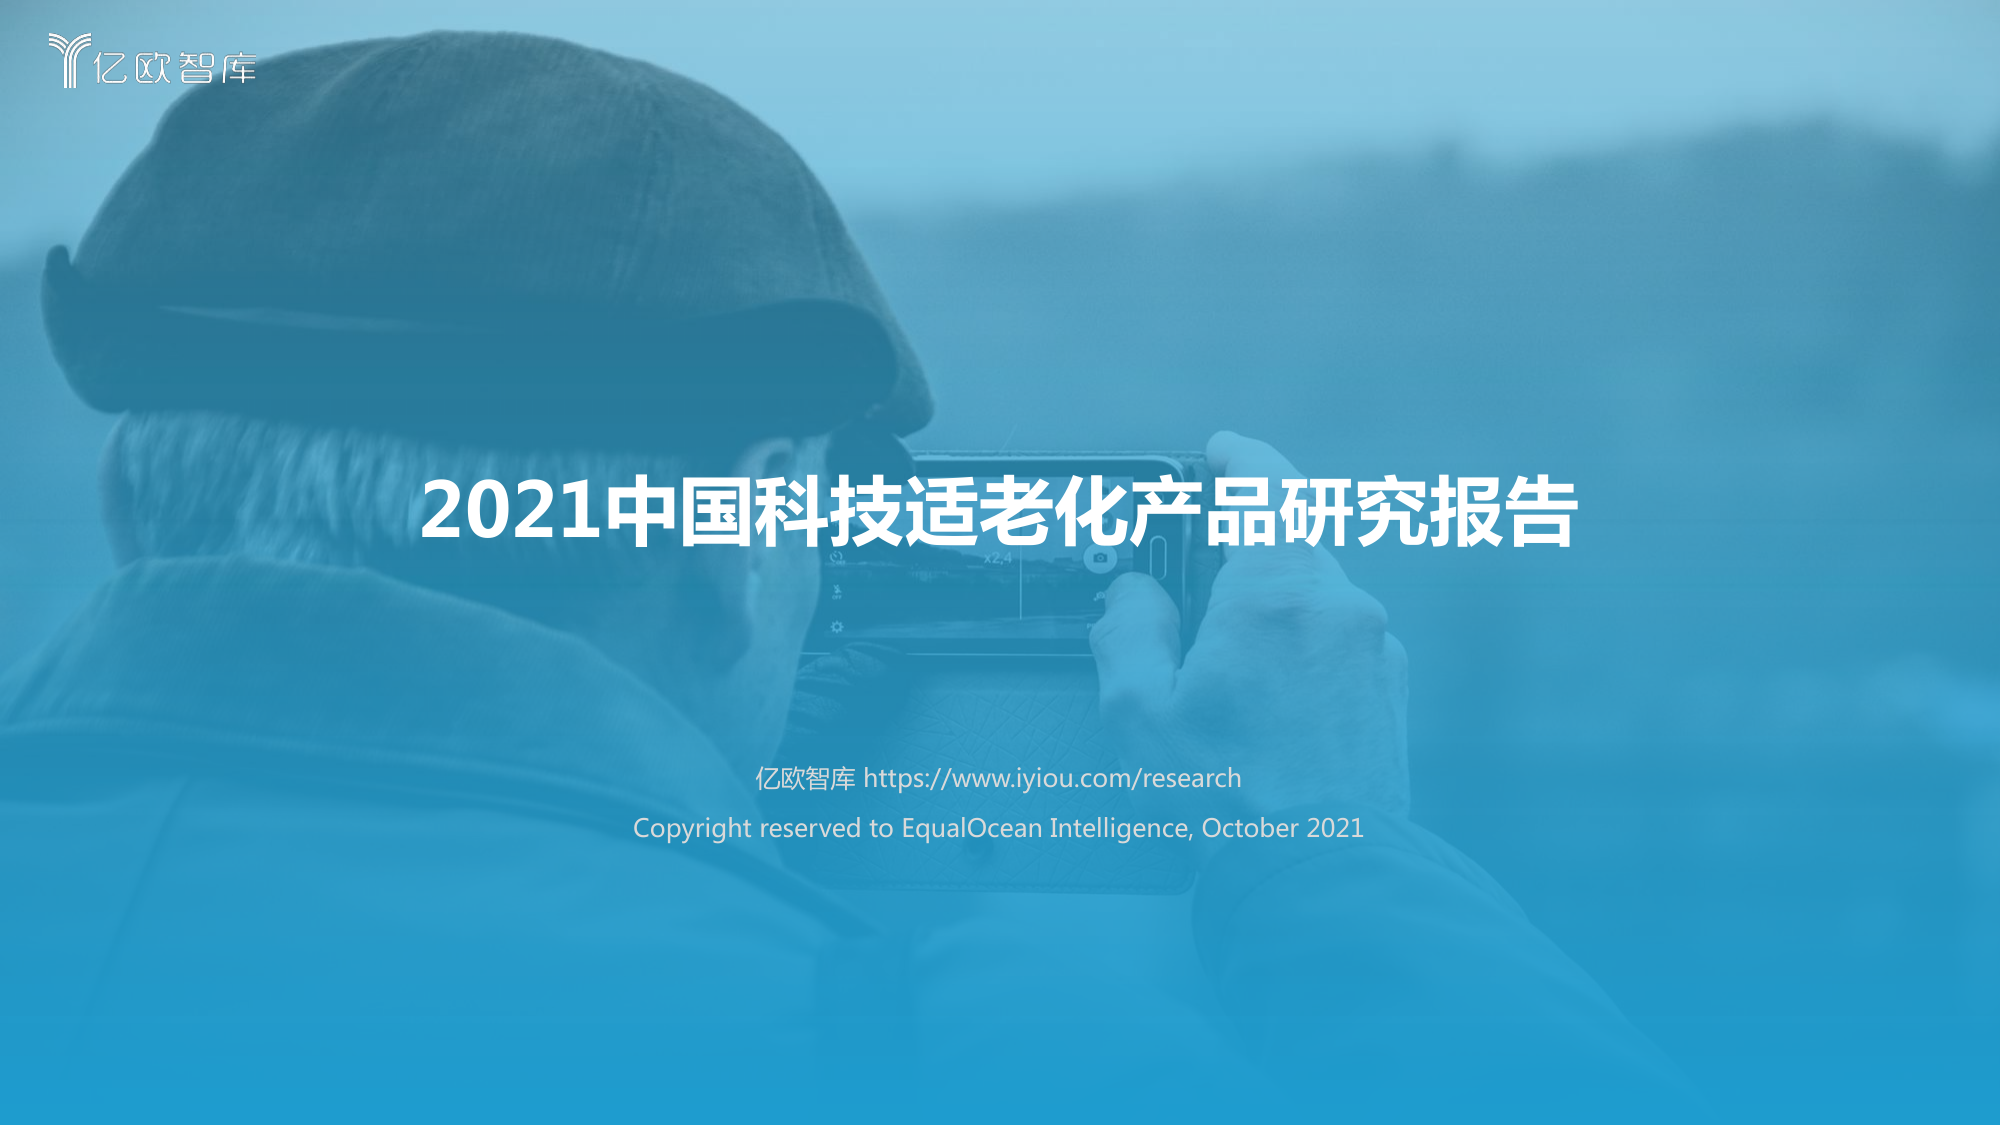 2021中国科技适老化产品研究报告-亿欧智库-2021.10-66页